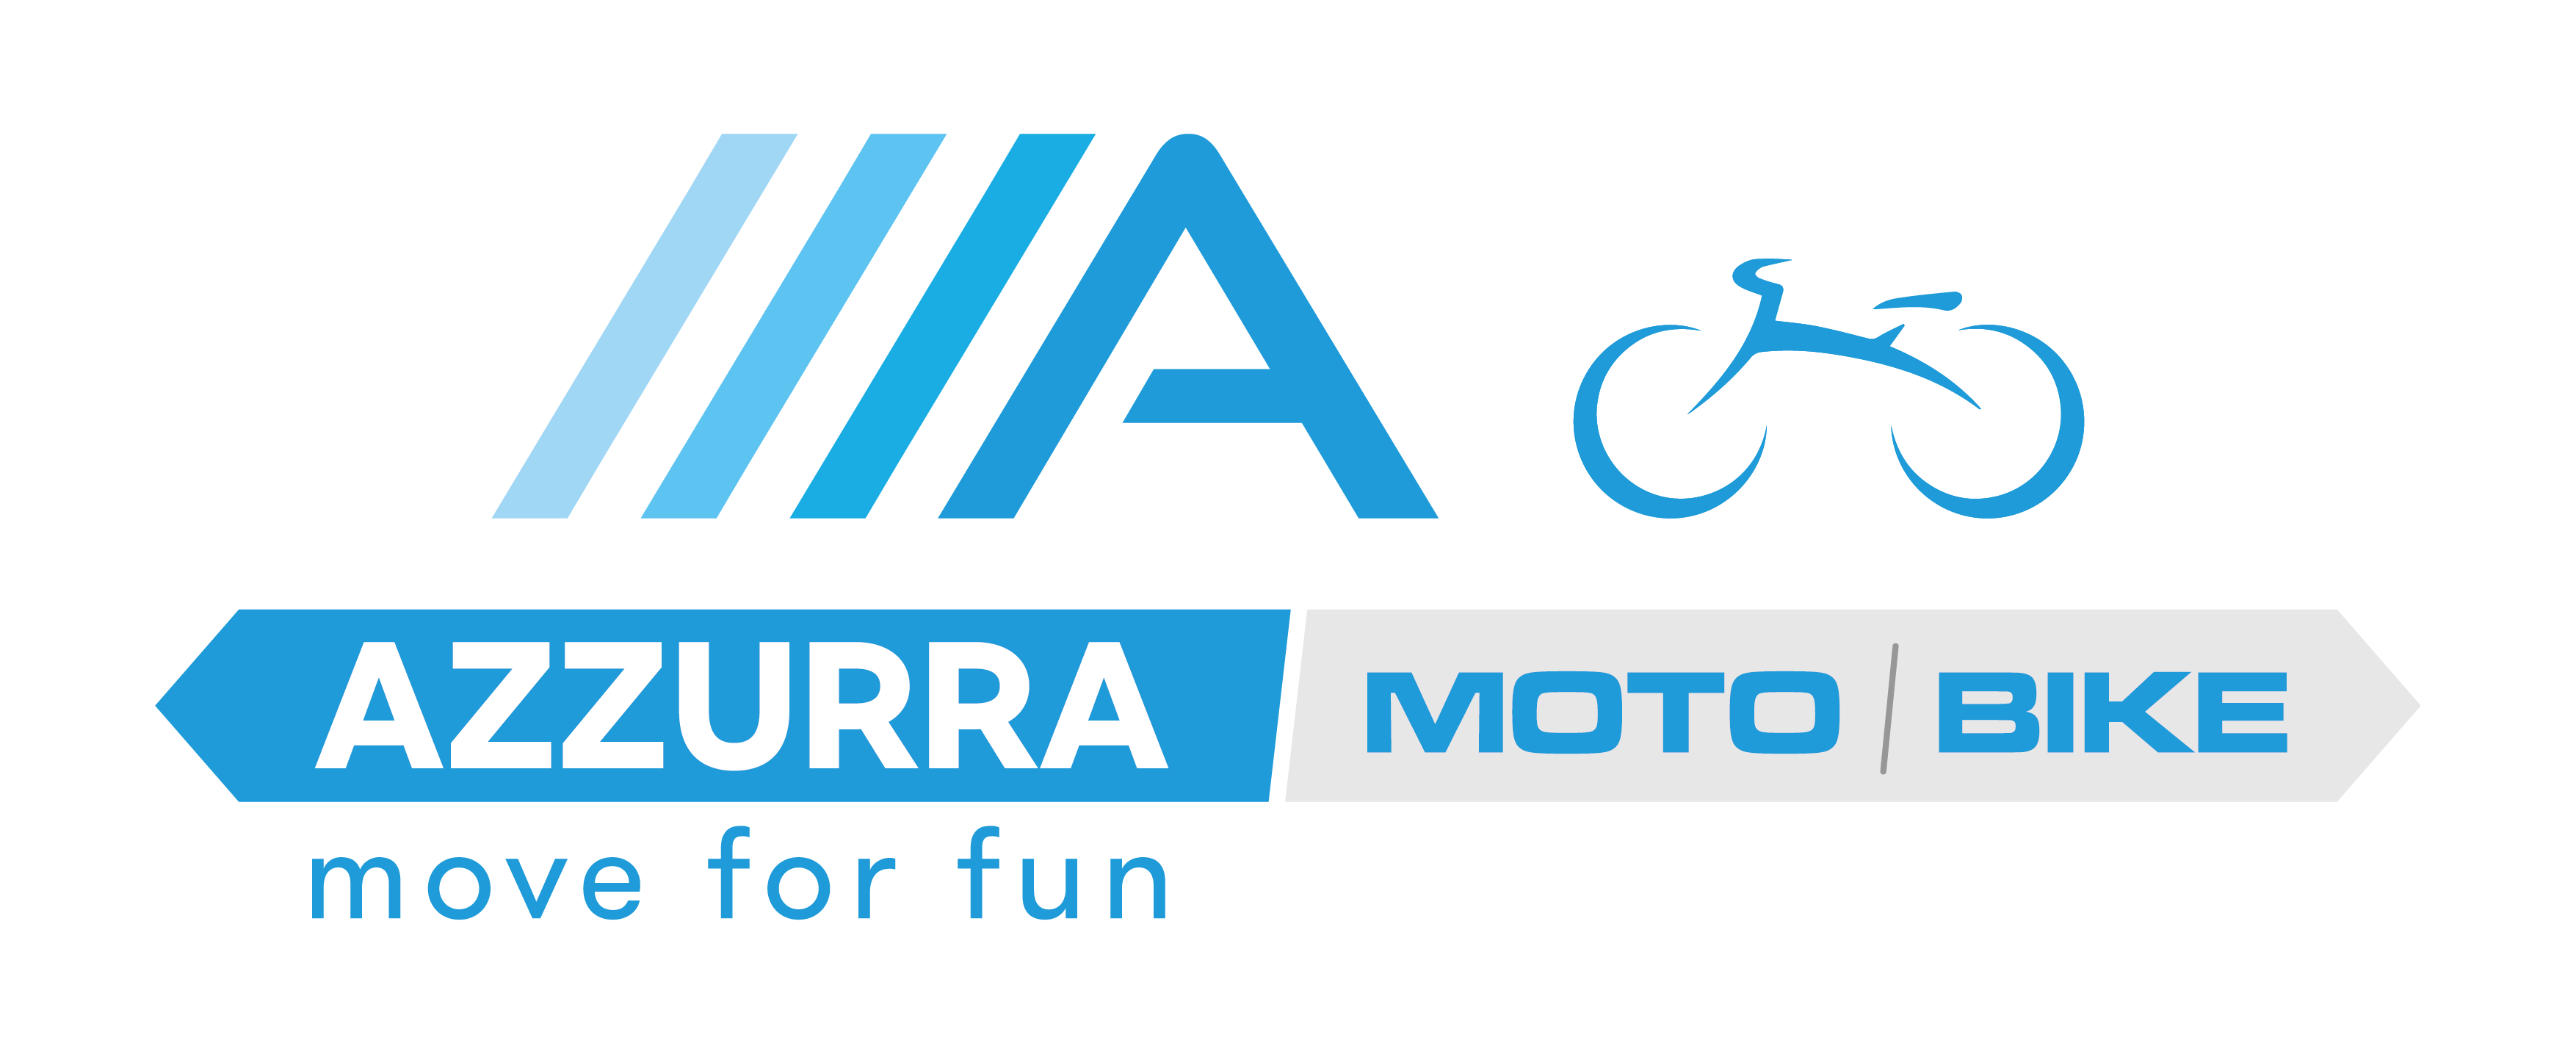 Azzurra Moto Bike